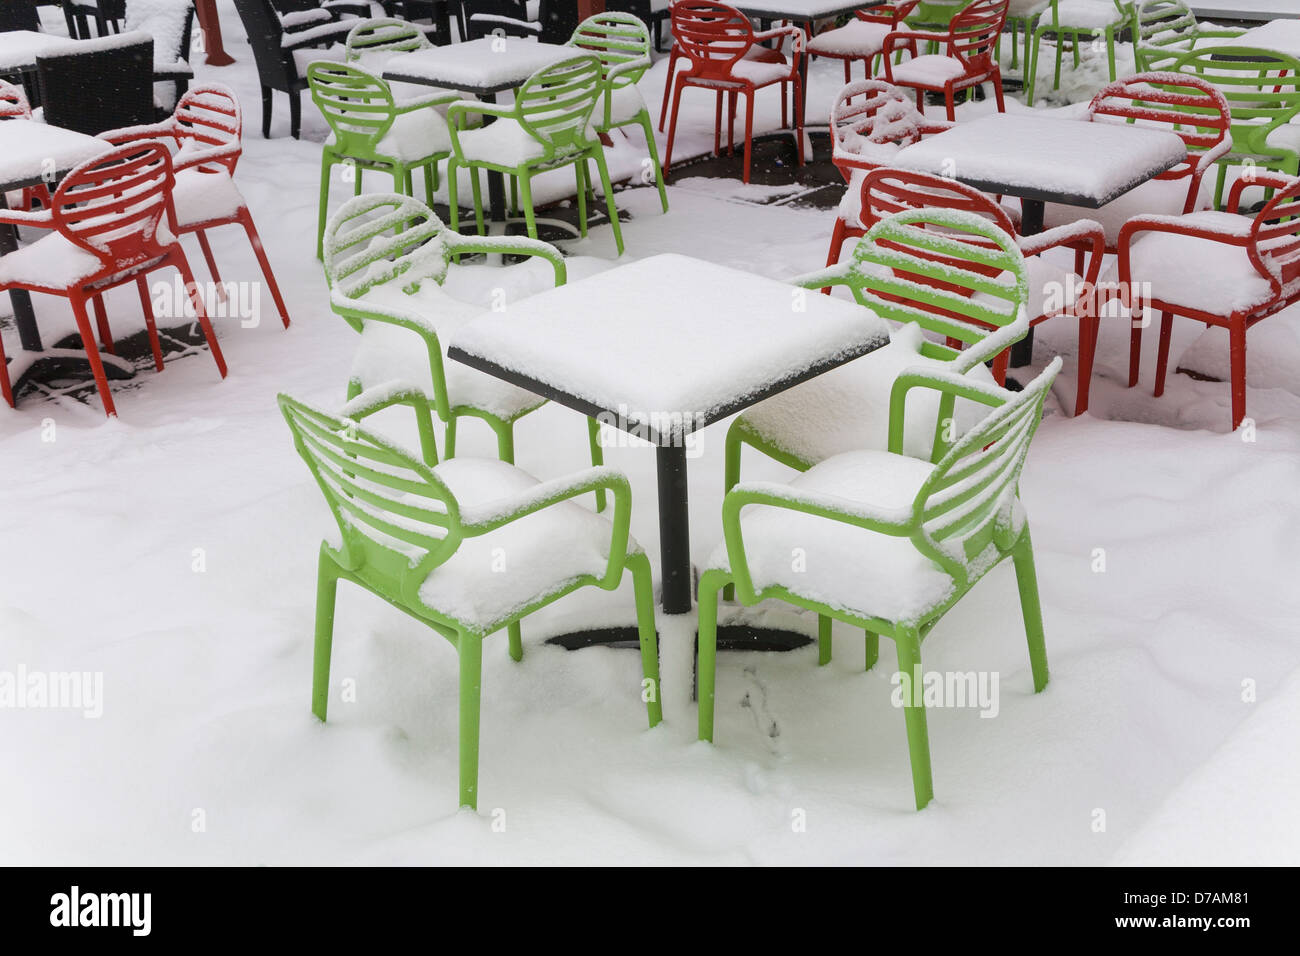 Des chaises et des tables couvertes de neige au début du printemps Banque D'Images